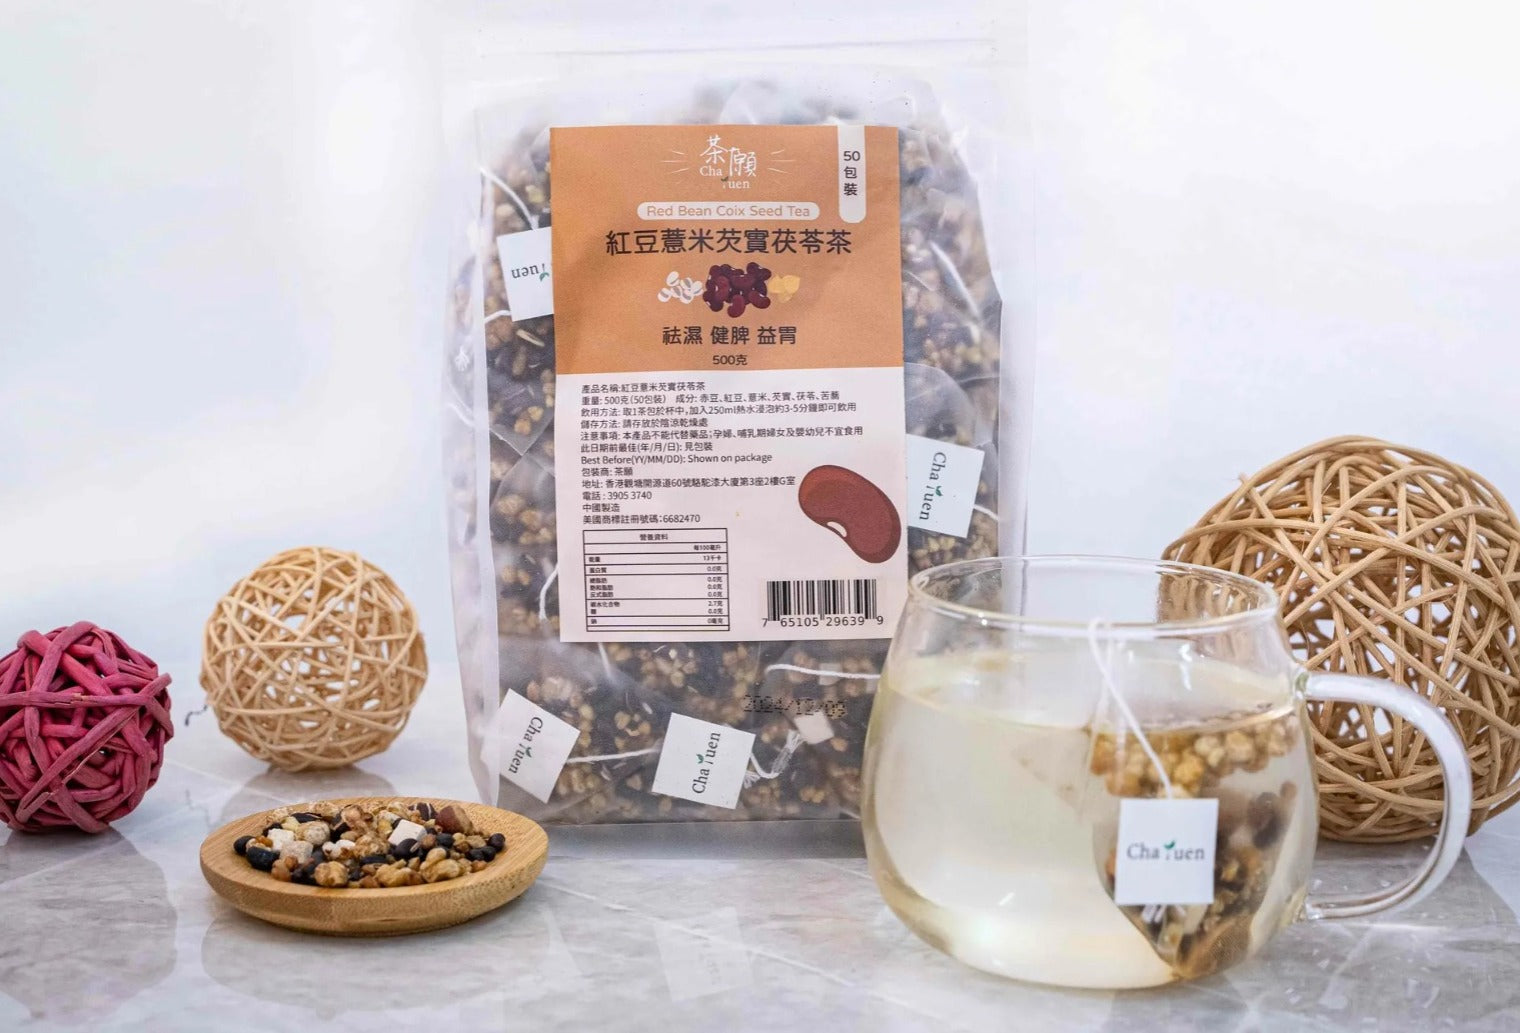 #T3804 紅豆薏米芡實茯苓茶 500克 (50包裝) Red Bean Coix Seed Tea 500g